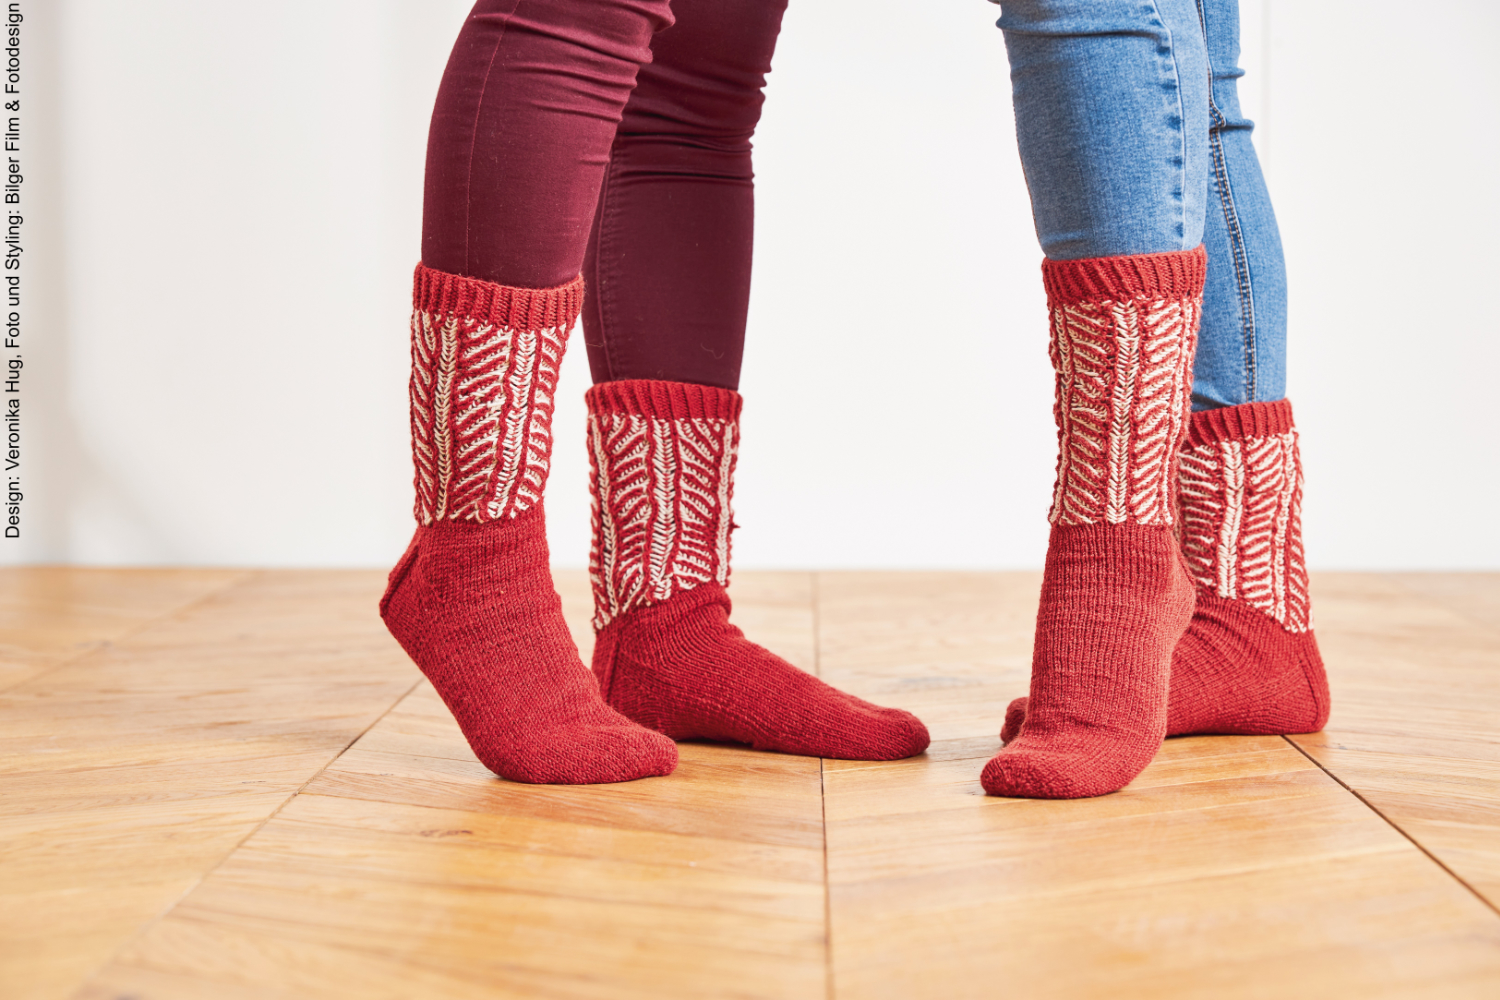 Socken in ziegel/beige | Wollpaket mit Merino Silk Socks Stretch, 4-fach | Stricken